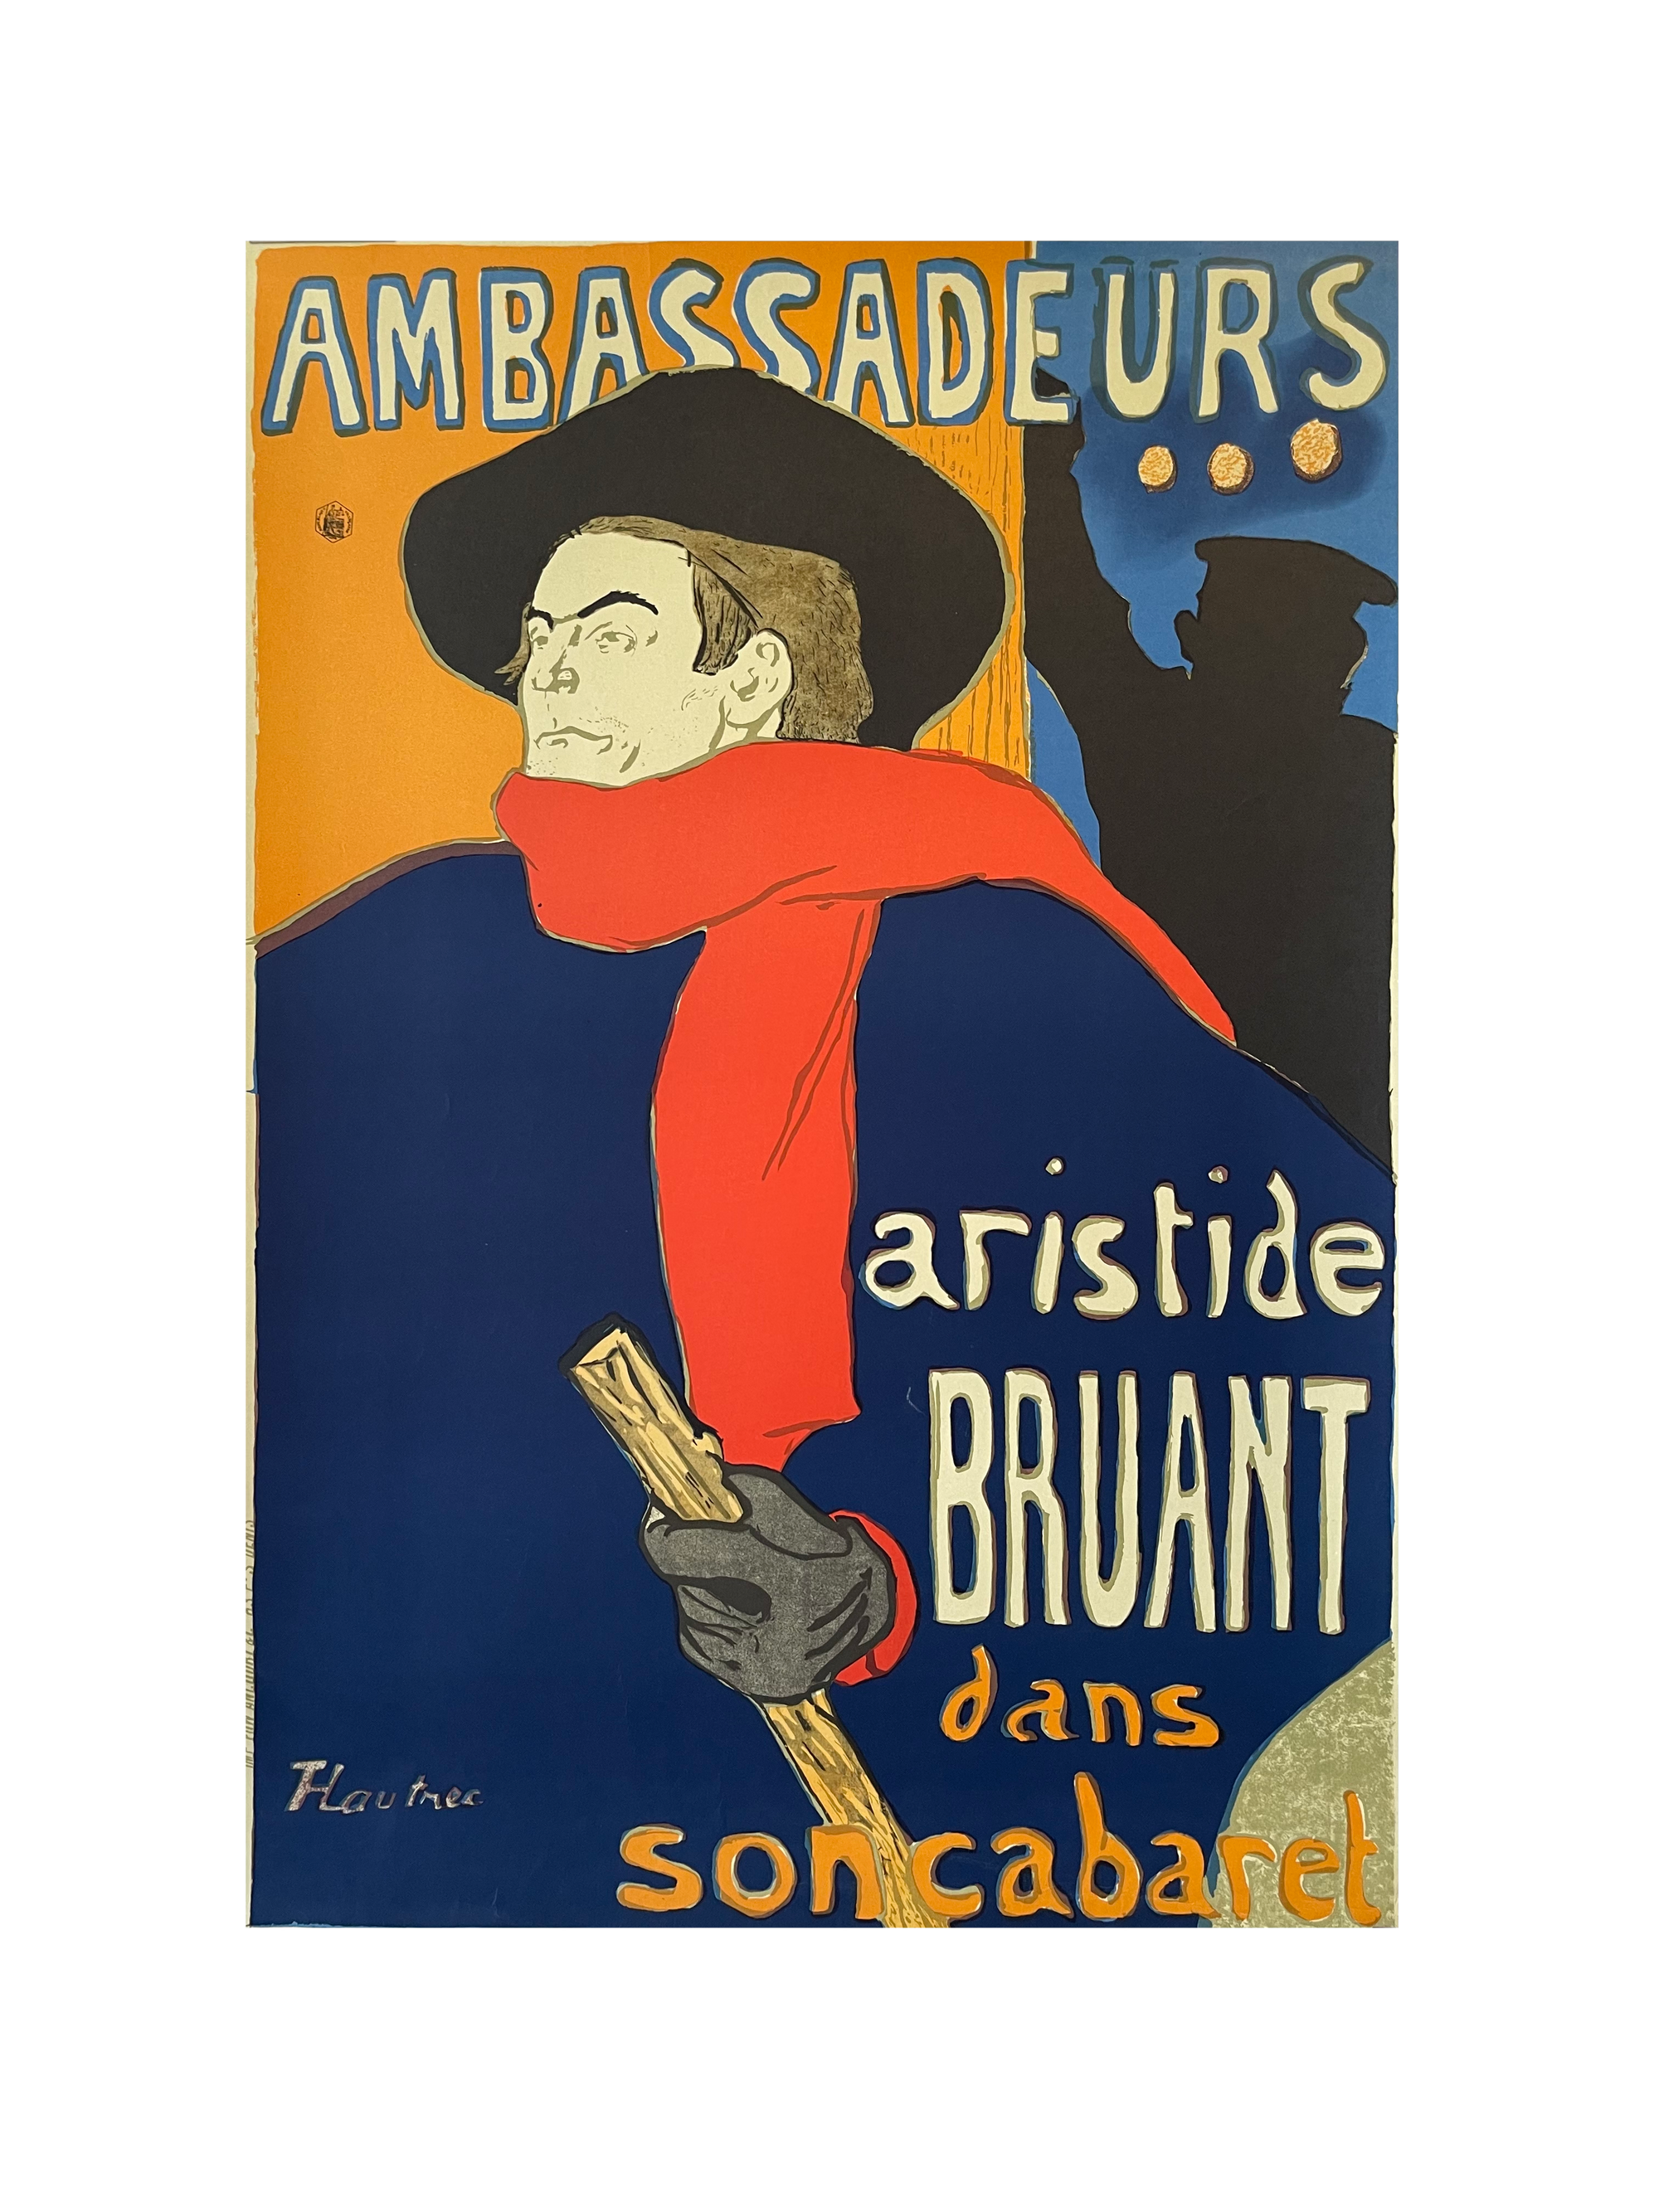 Ambassadeurs: Aristide Bruant by Henri de Toulouse-Lautrec